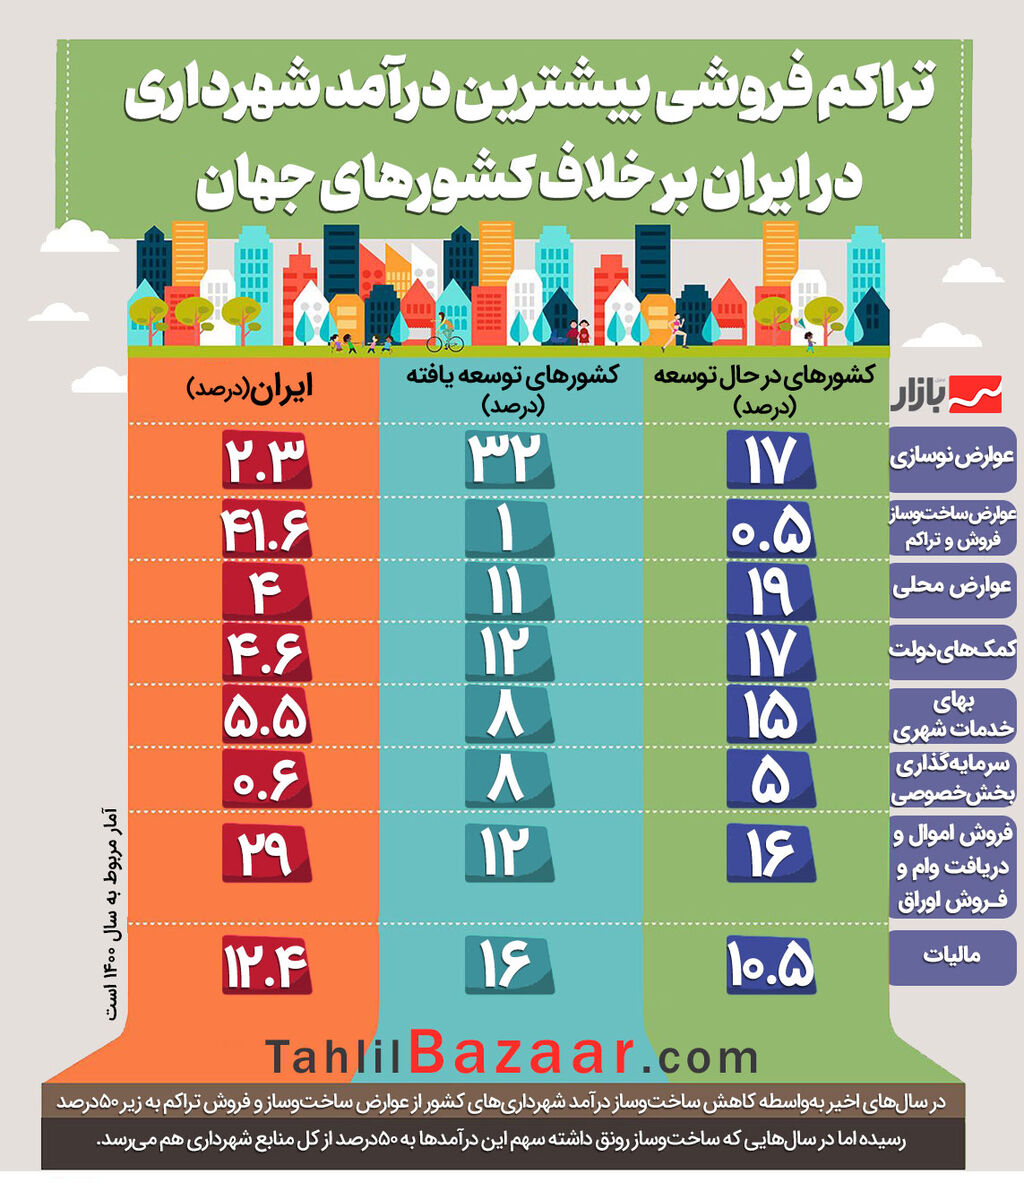 تراکم فروشی بیشترین درآمد شهرداری در ایران بر خلاف کشورهای جهان